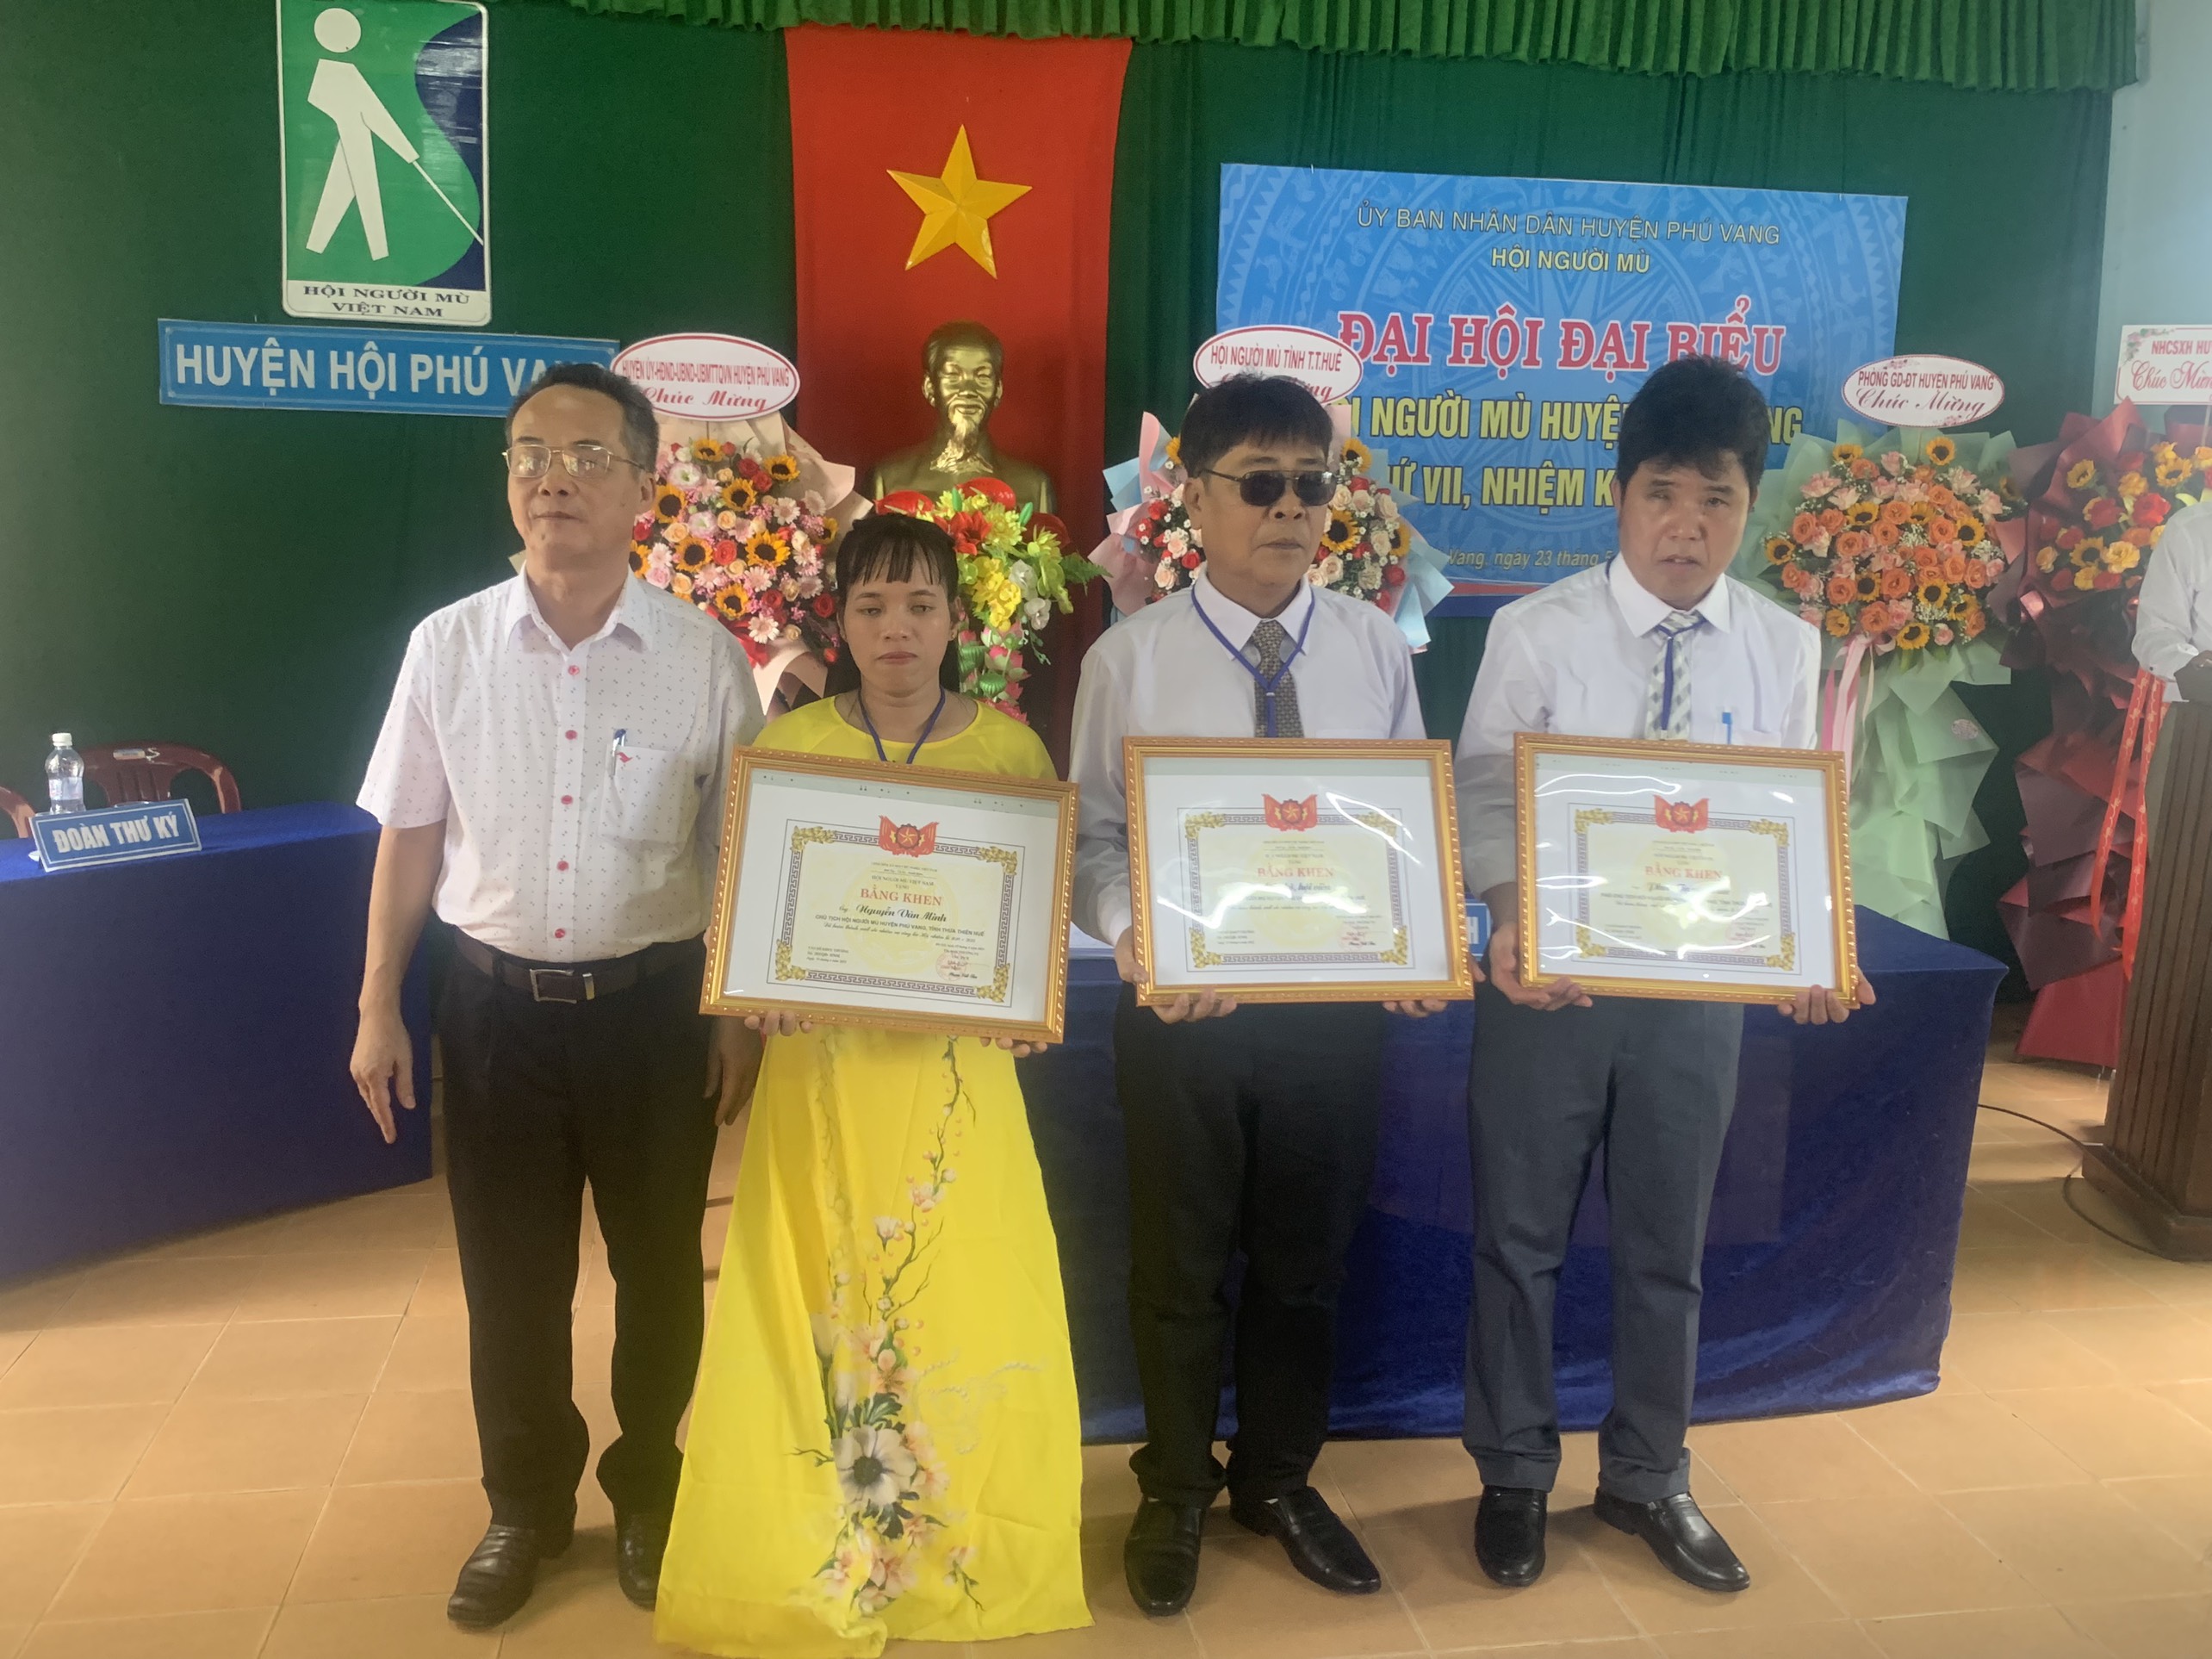 Huyện hội Phú Vang, tỉnh Thừa Thiên Huế tổ chức Đại hội đại biểu lần thứ VII